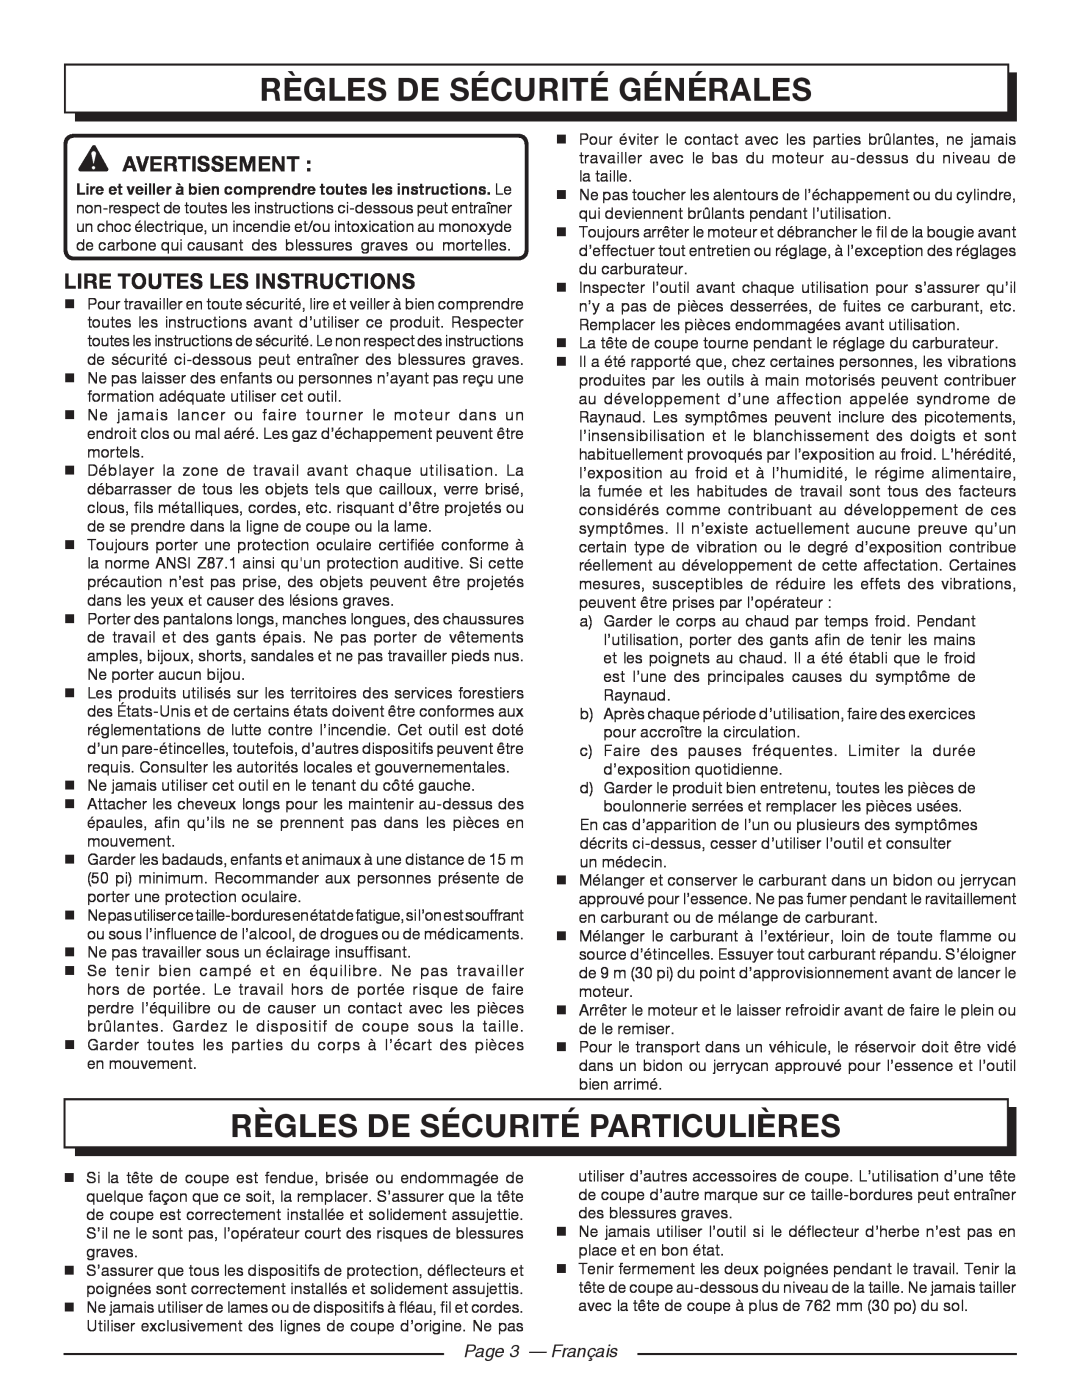 Homelite 26CS UT22600 Règles De Sécurité Générales, Règles De Sécurité Particulières, Avertissement , Page 3 - Français 